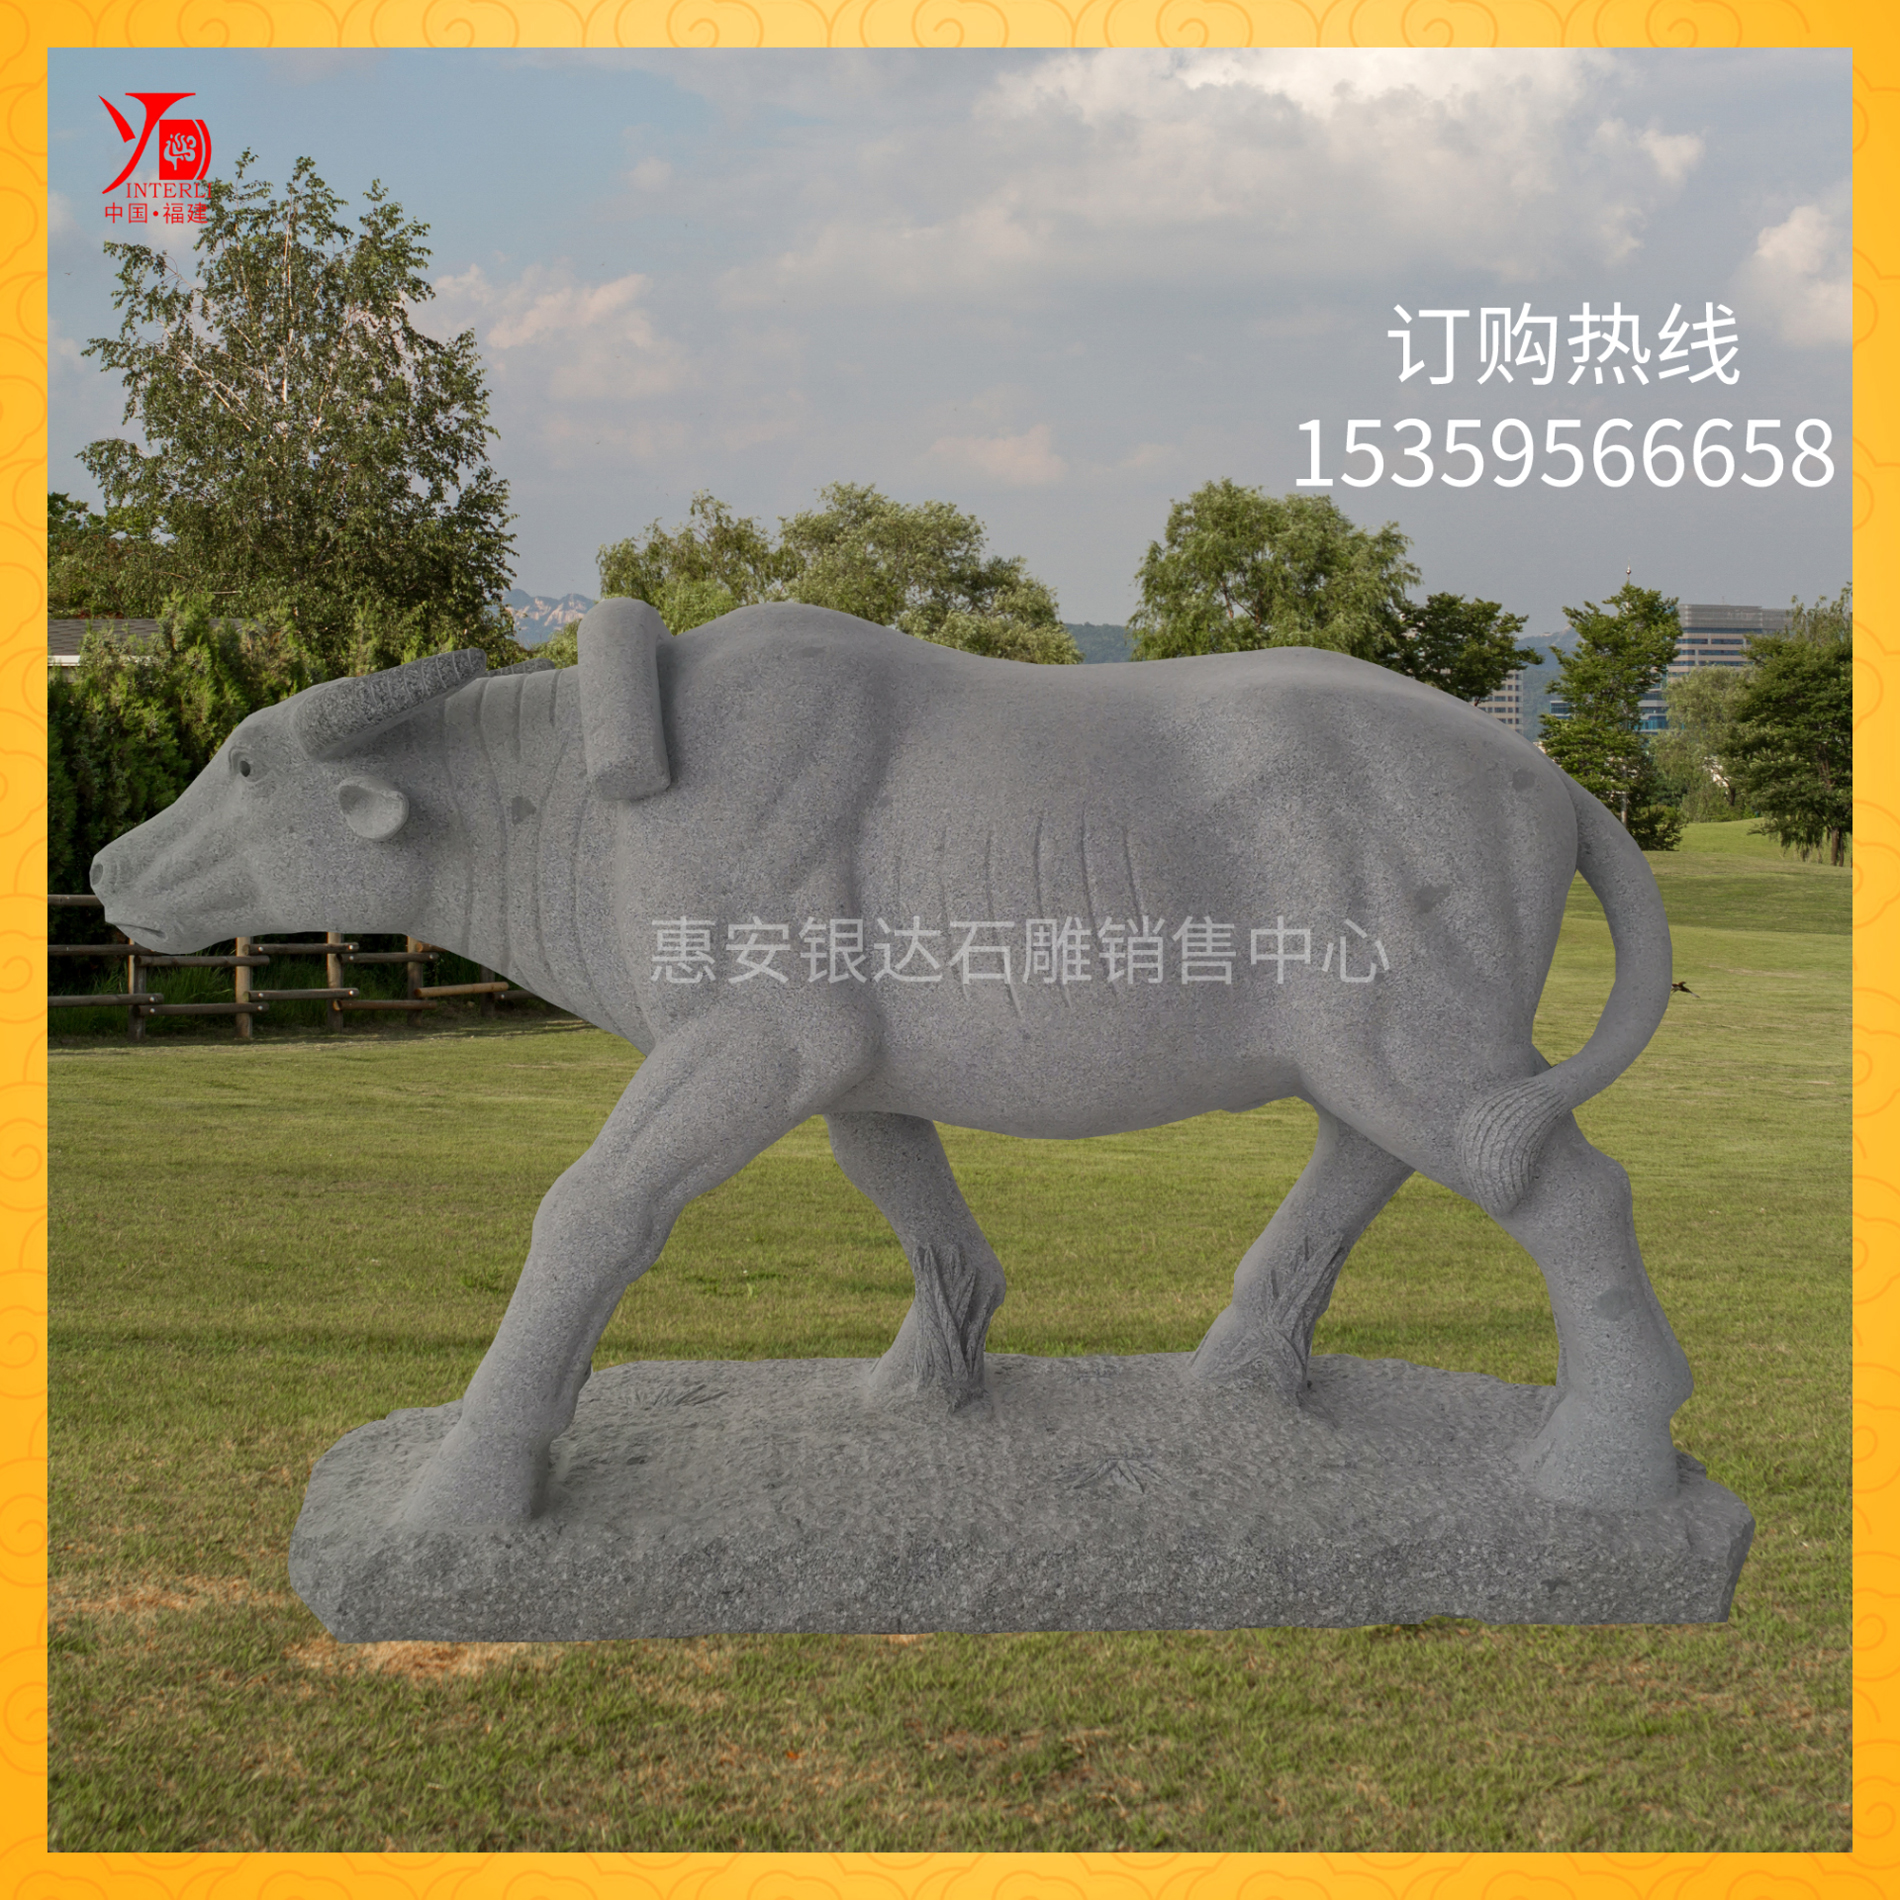 石材牛雕刻厂家-价格-供应商 石材牛雕刻图片